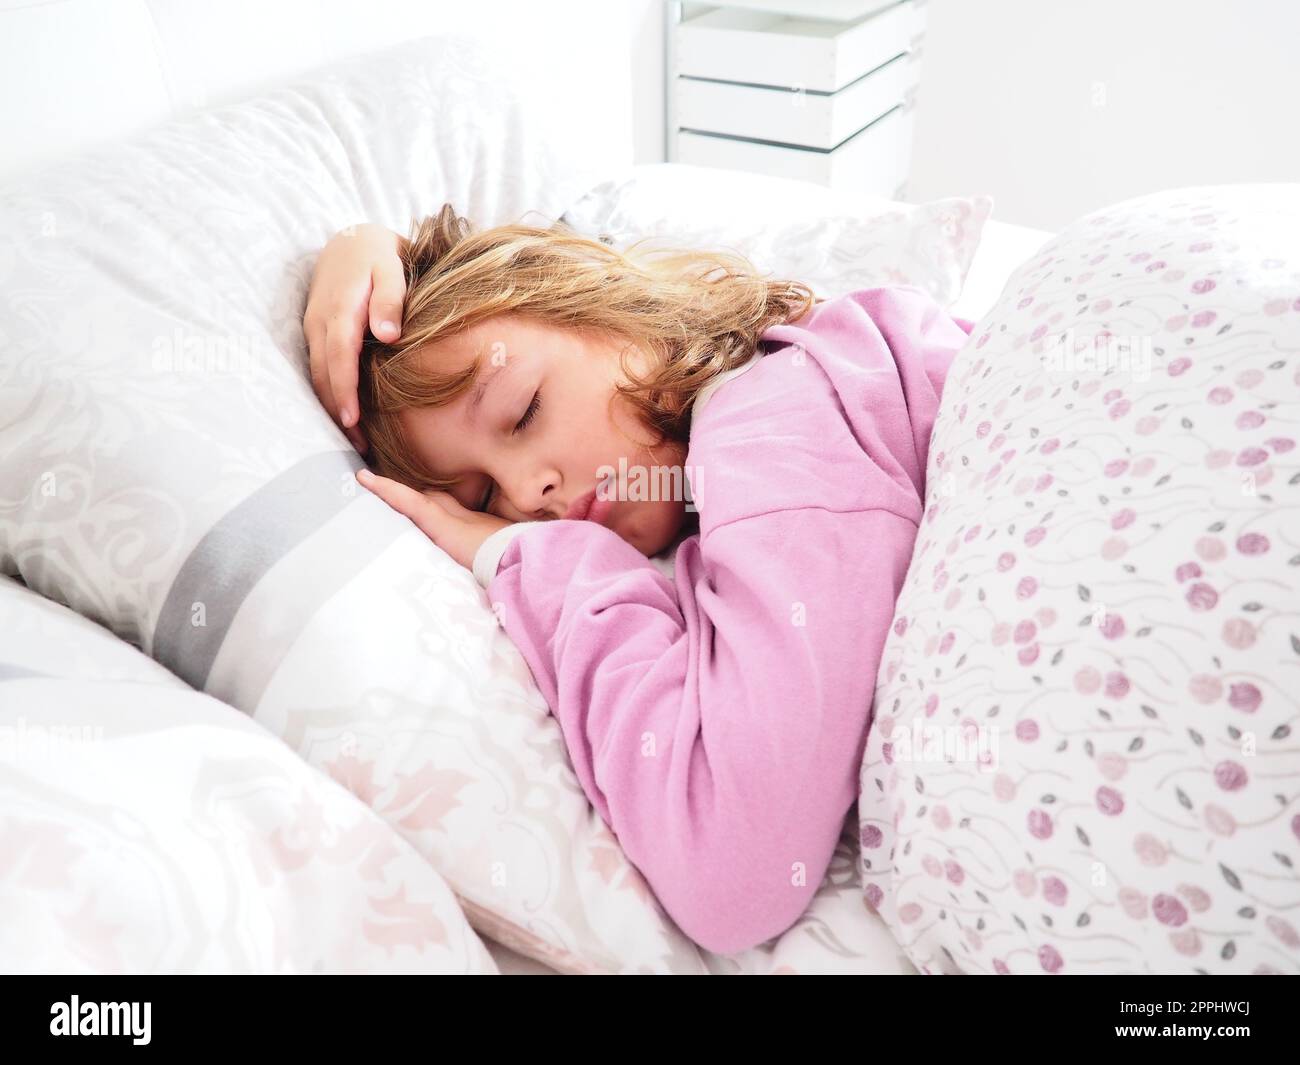 Une belle fille caucasienne de 8 ans aux cheveux blonds, vêtue de pyjama rose, dort sur un lit avec une couverture moelleuse, embrassant un oreiller. La lumière douce du soleil du matin traverse la fenêtre. Banque D'Images